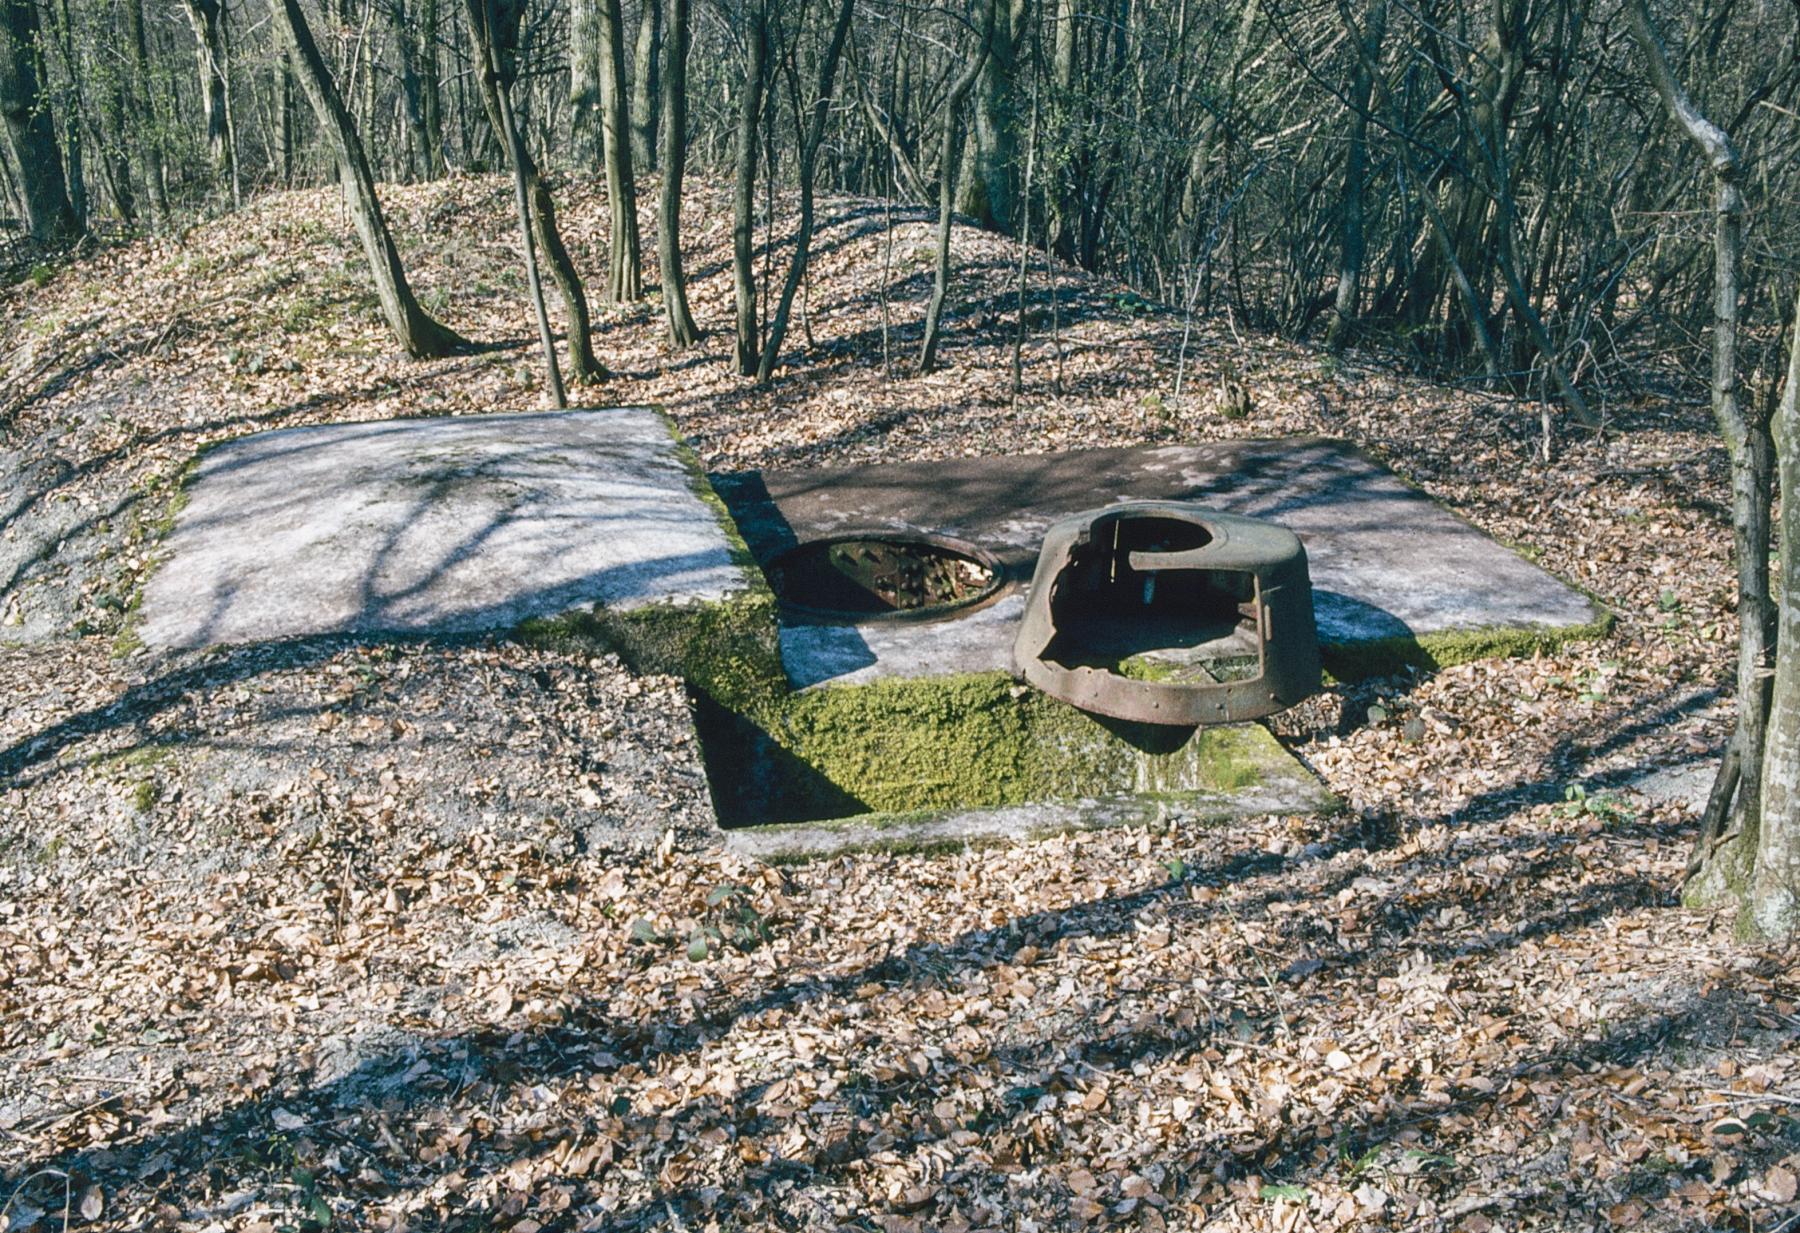 Ligne Maginot - LANGSTWALD 4 - (Blockhaus pour arme infanterie) - Le blockhaus en 1980
La tourelle fortement endommagée est encore sur place